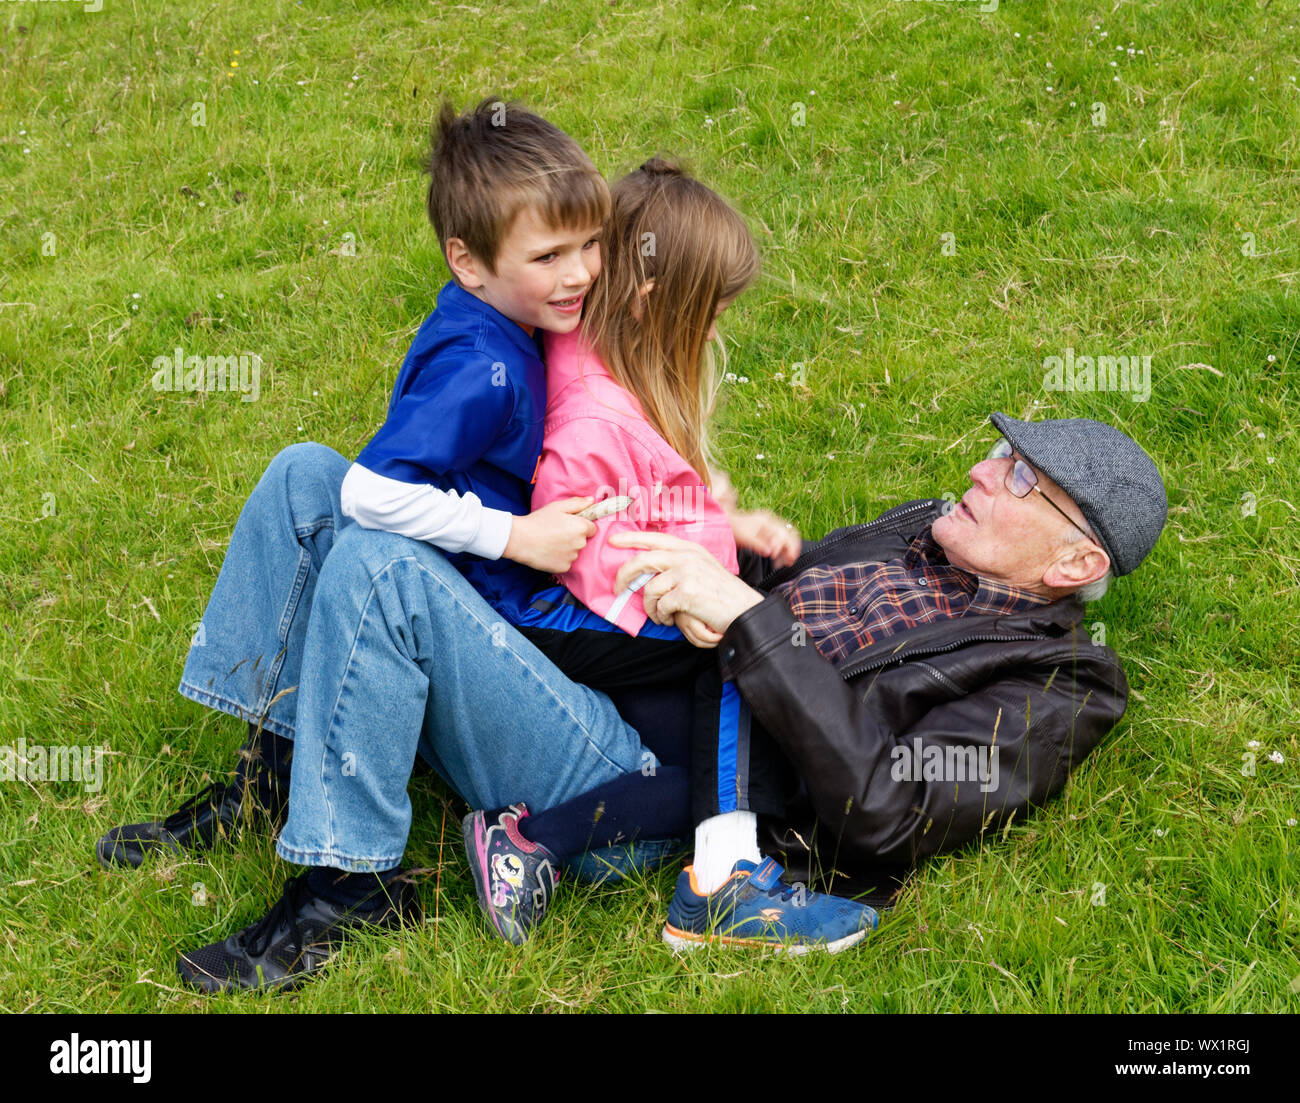 Deux enfants (frère et sœur - 7 et 5 ans) assis sur leur grand-père couché dans l'herbe Banque D'Images